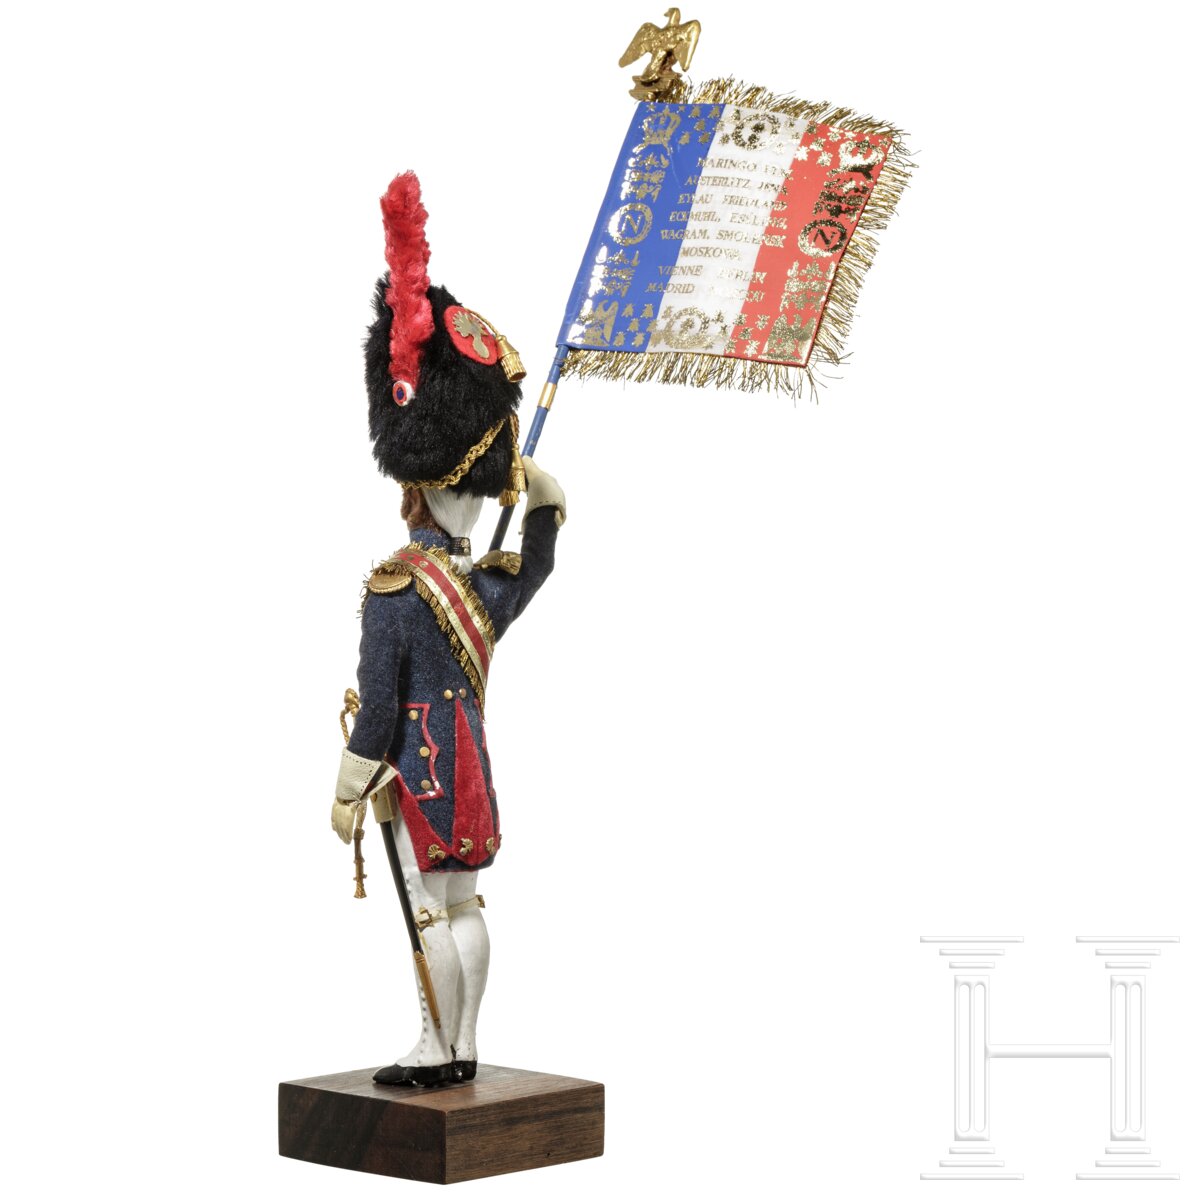 Offizier der Gardegrenadiere um 1810 als Fahnenträger - Uniformfigur von Marcel Riffet, 20. Jhdt. - Image 3 of 5